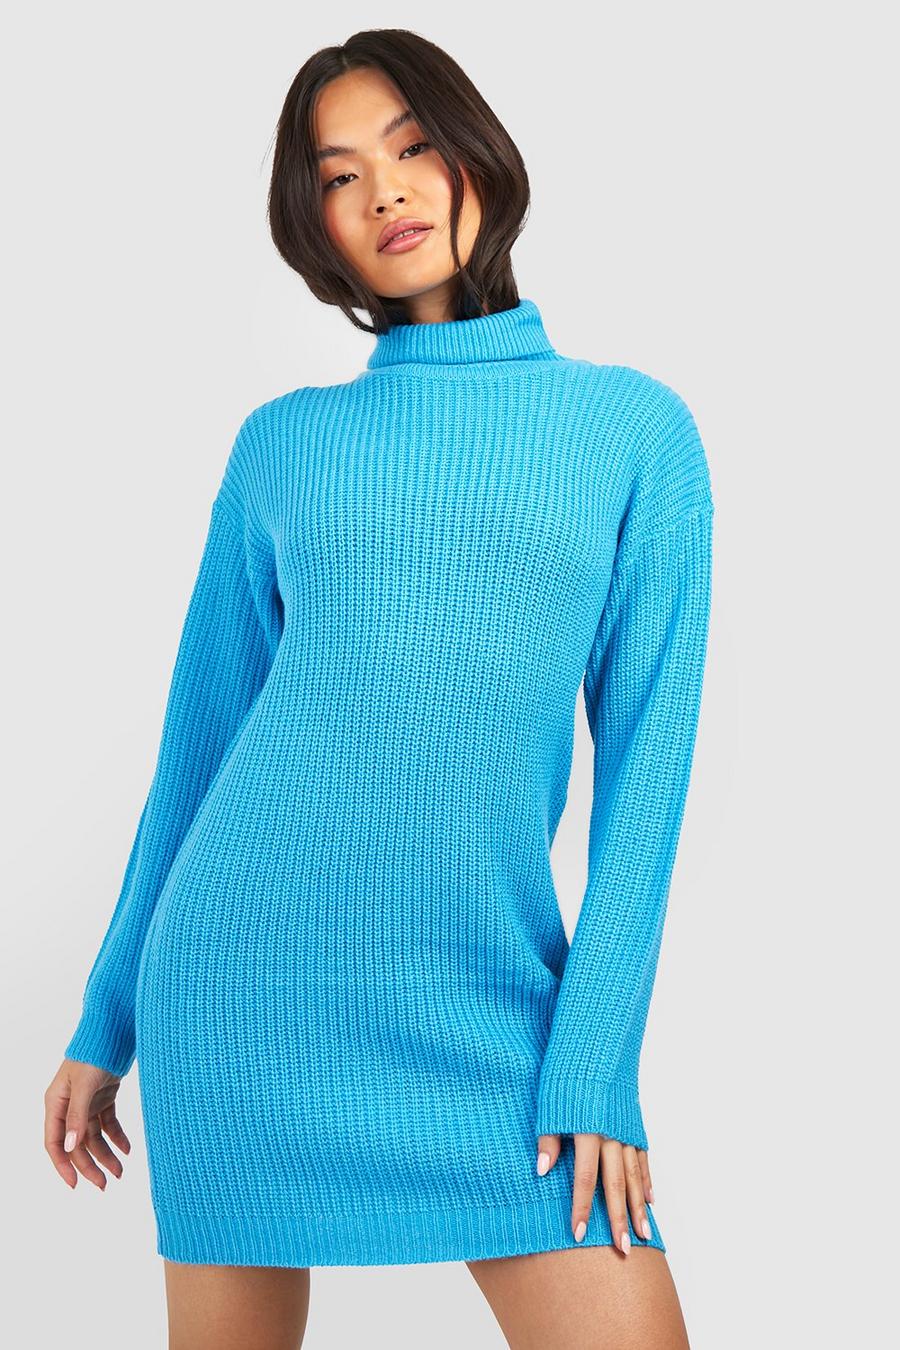 Turquoise Turtleneck Oversized Sweater